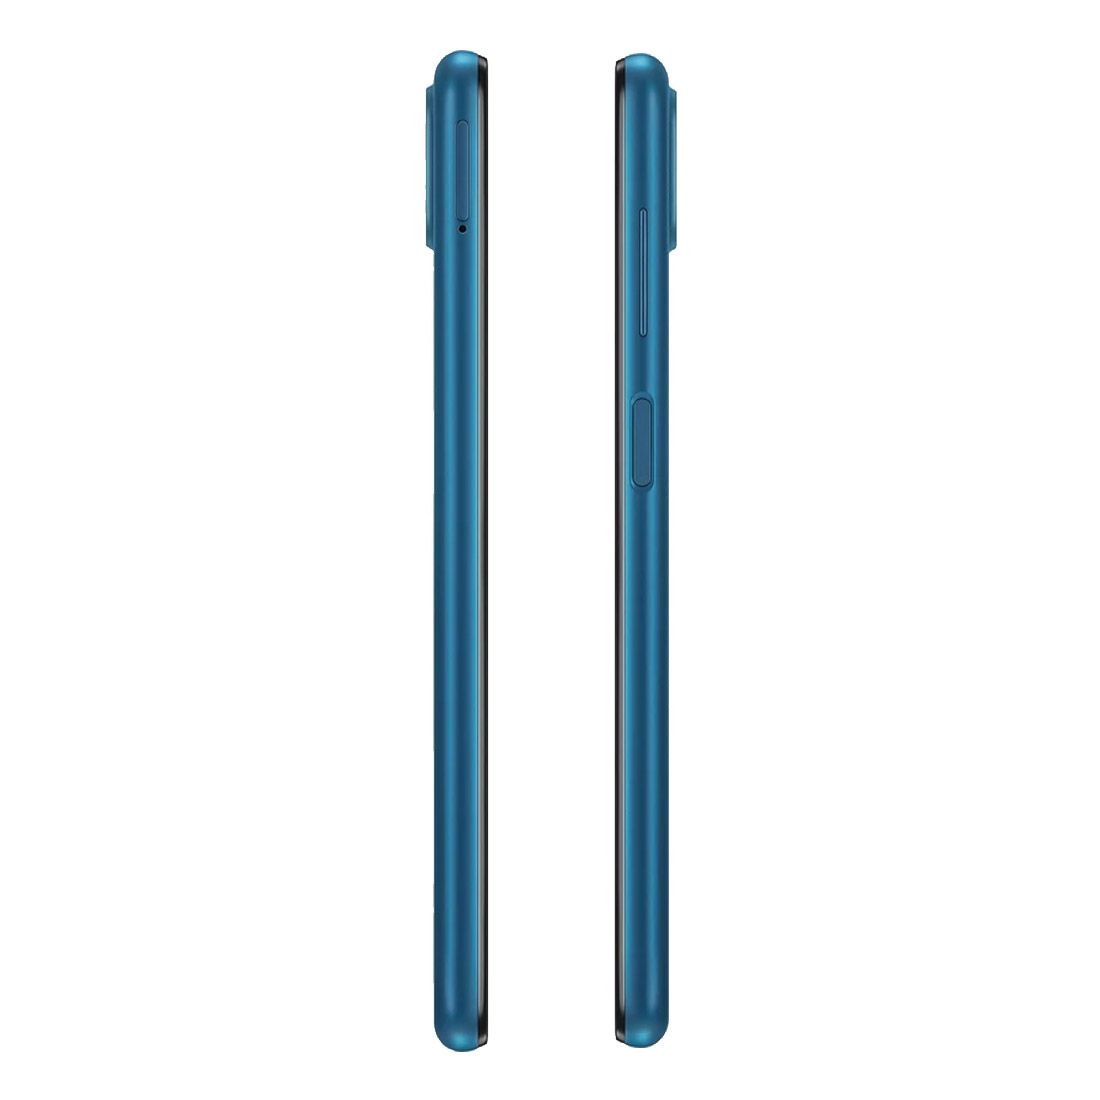 Samsung Galaxy A12 4G 128GB Smartpone - Blue